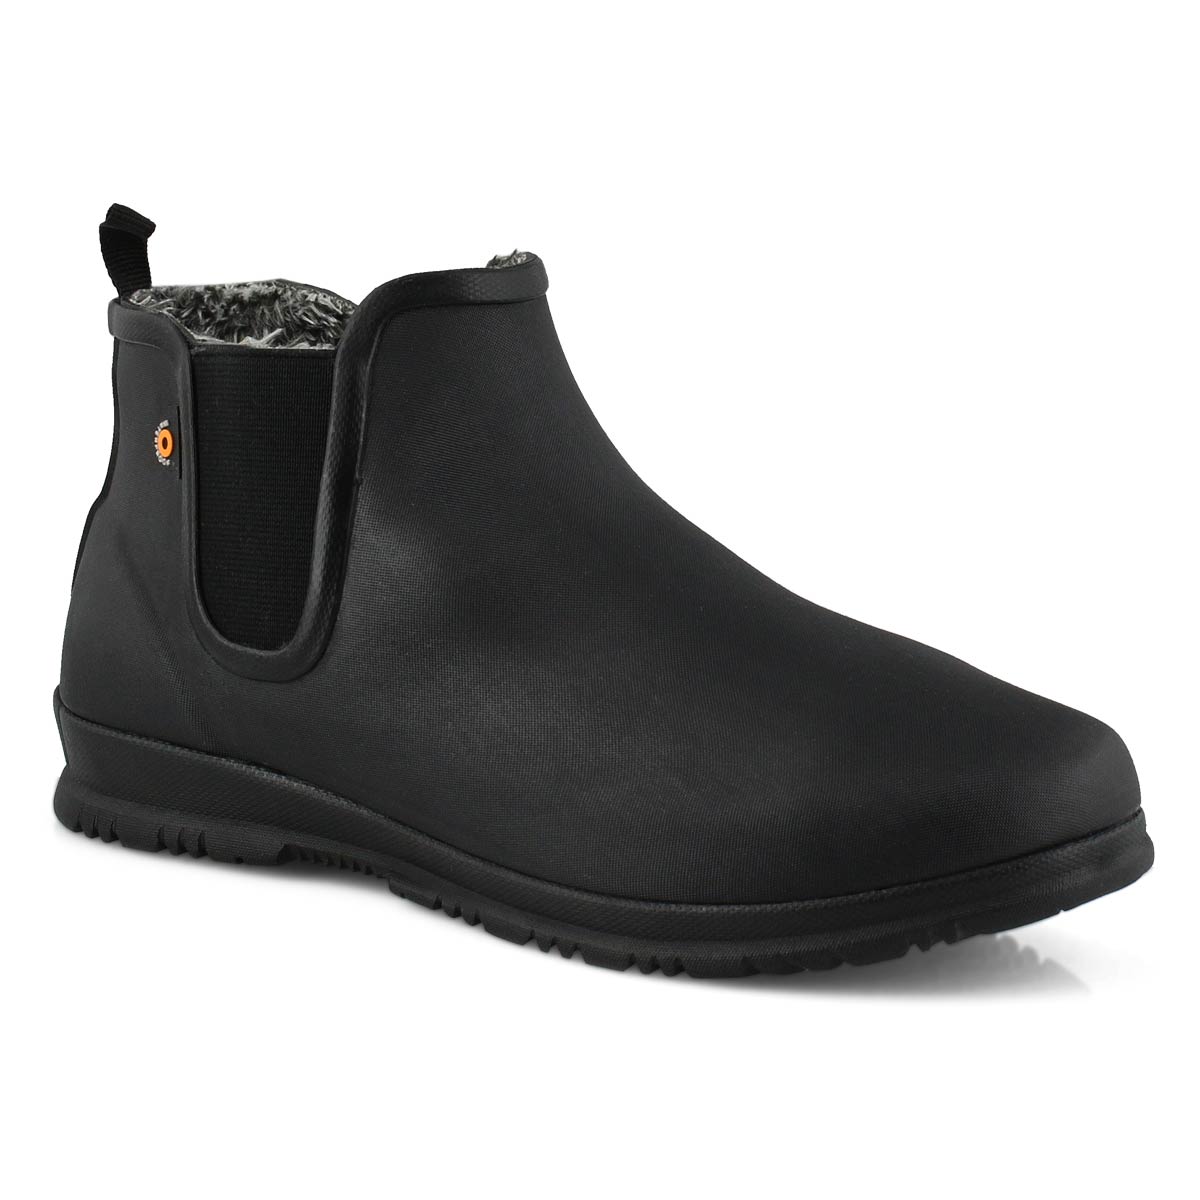 Women's Sweetpea Winter Waterproof Boot - Black